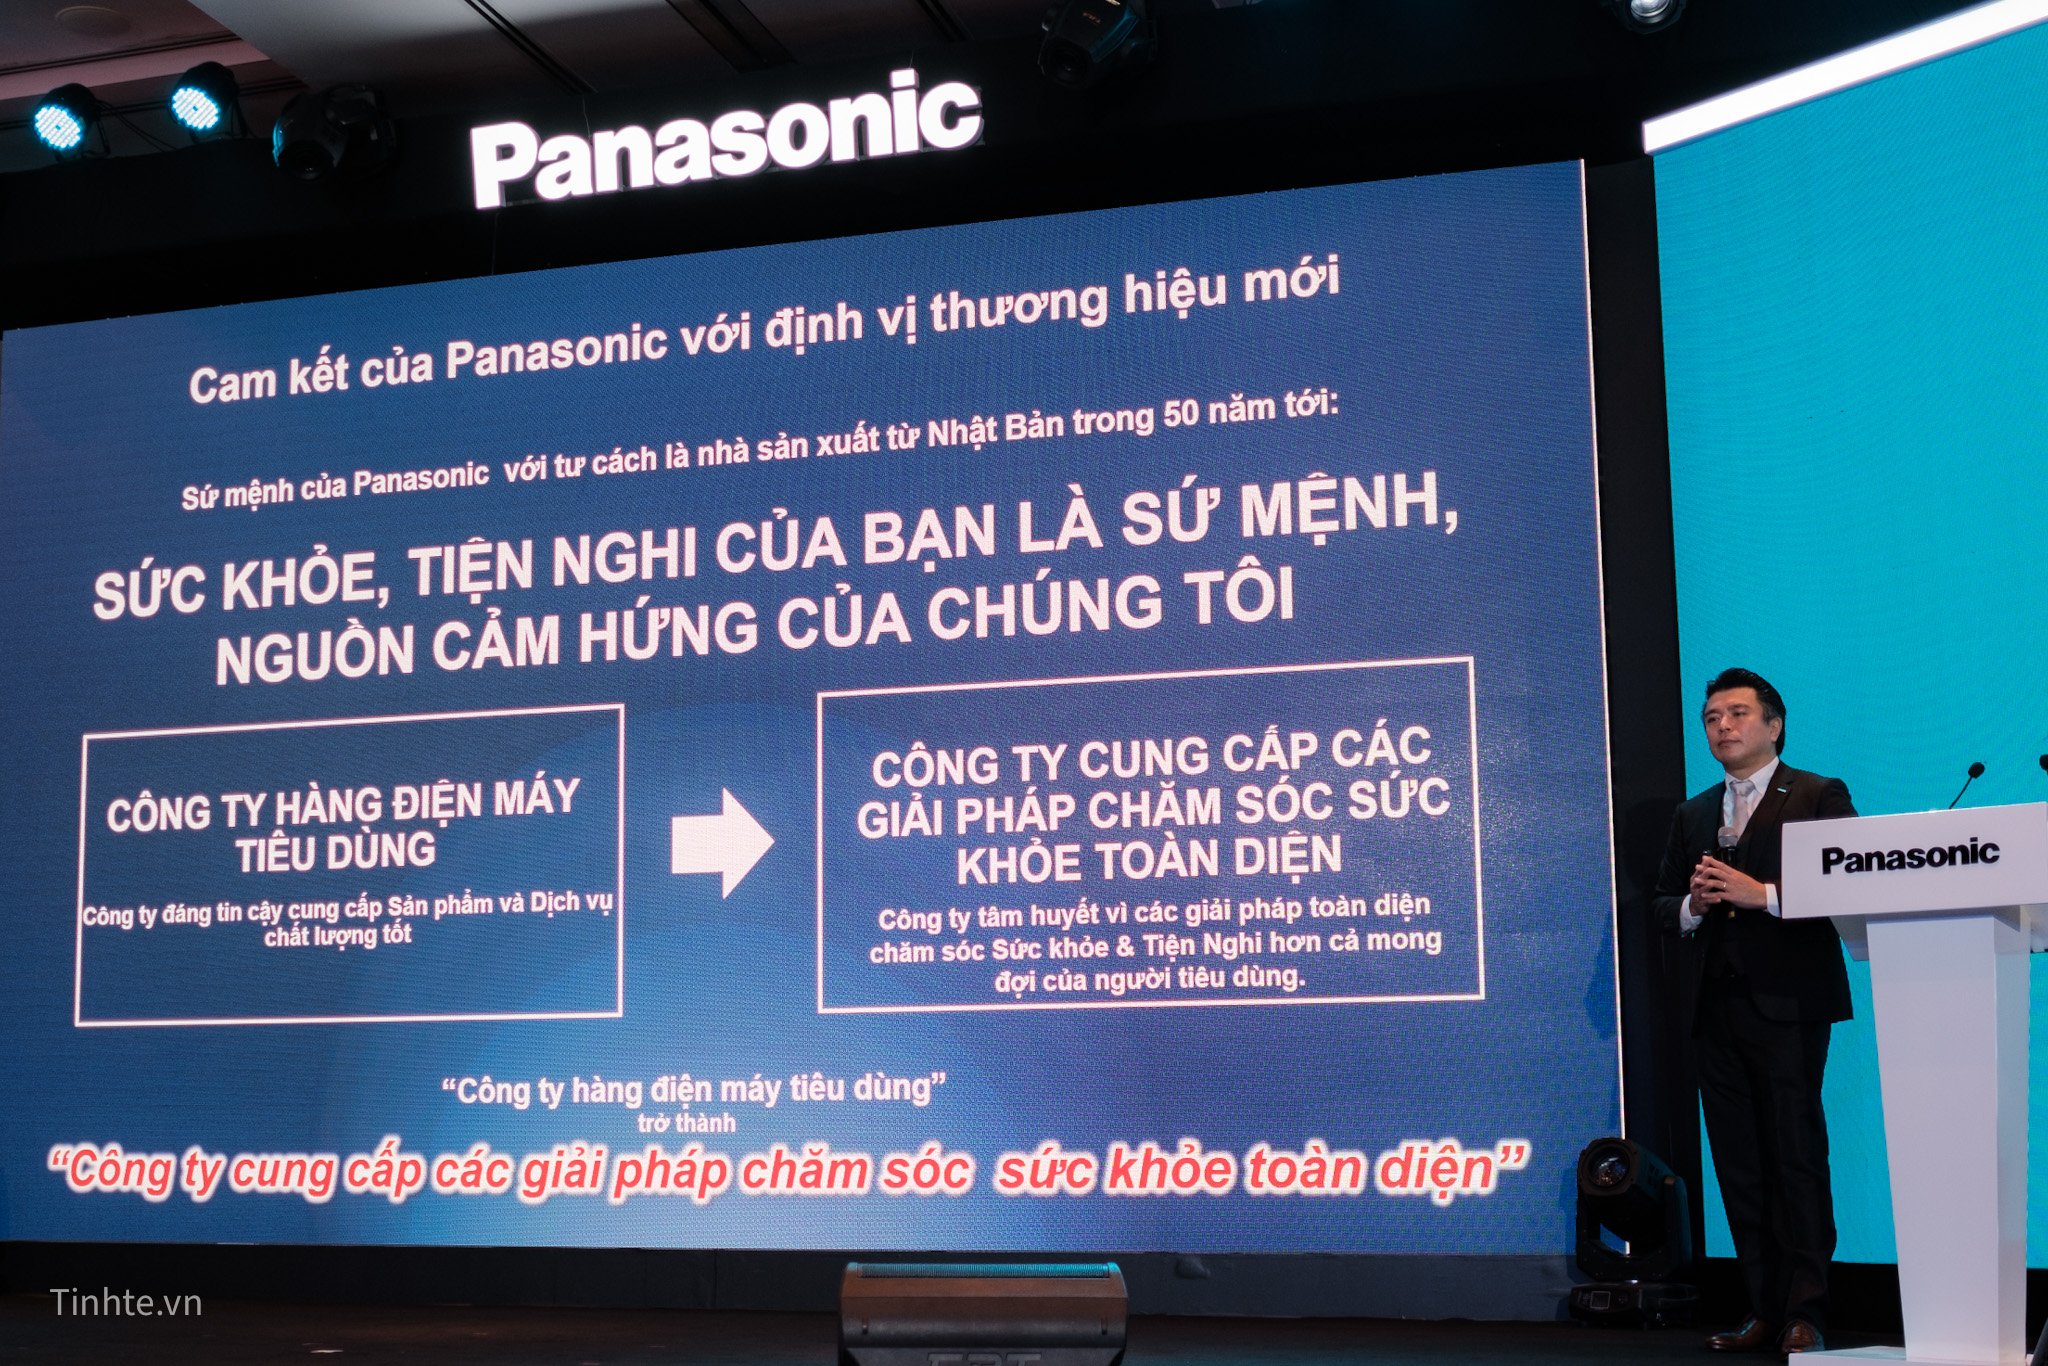 Panasonic_Vietnam_2020-03.jpg